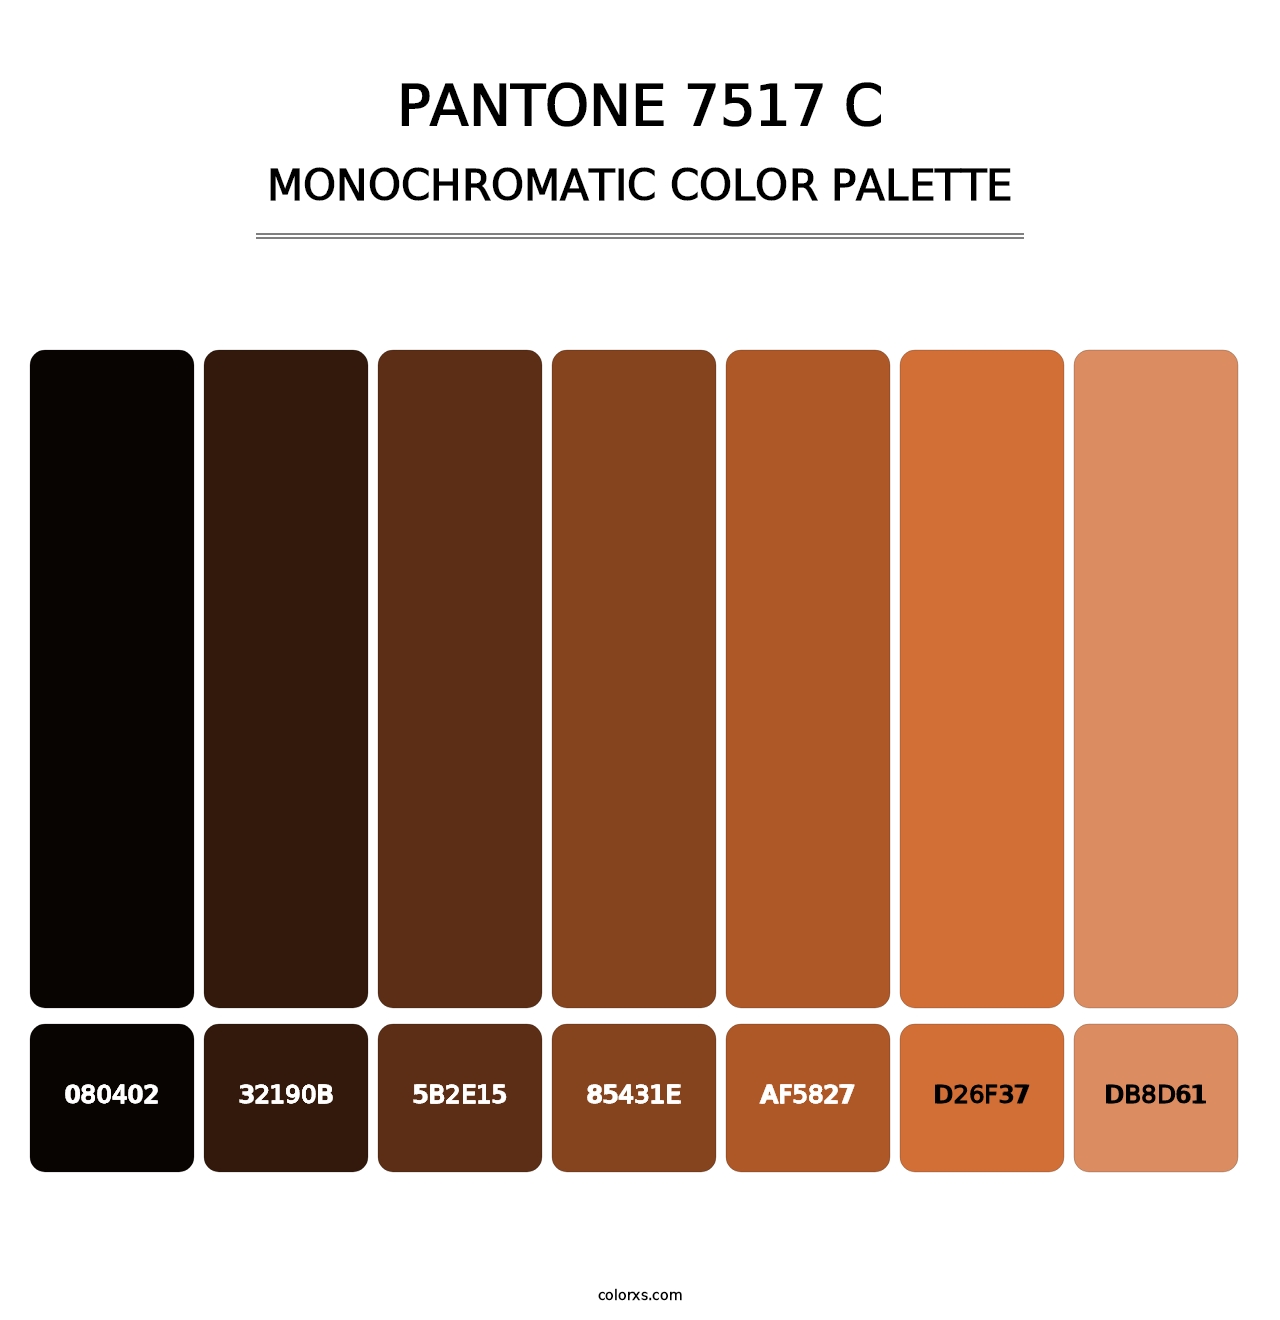 PANTONE 7517 C - Monochromatic Color Palette